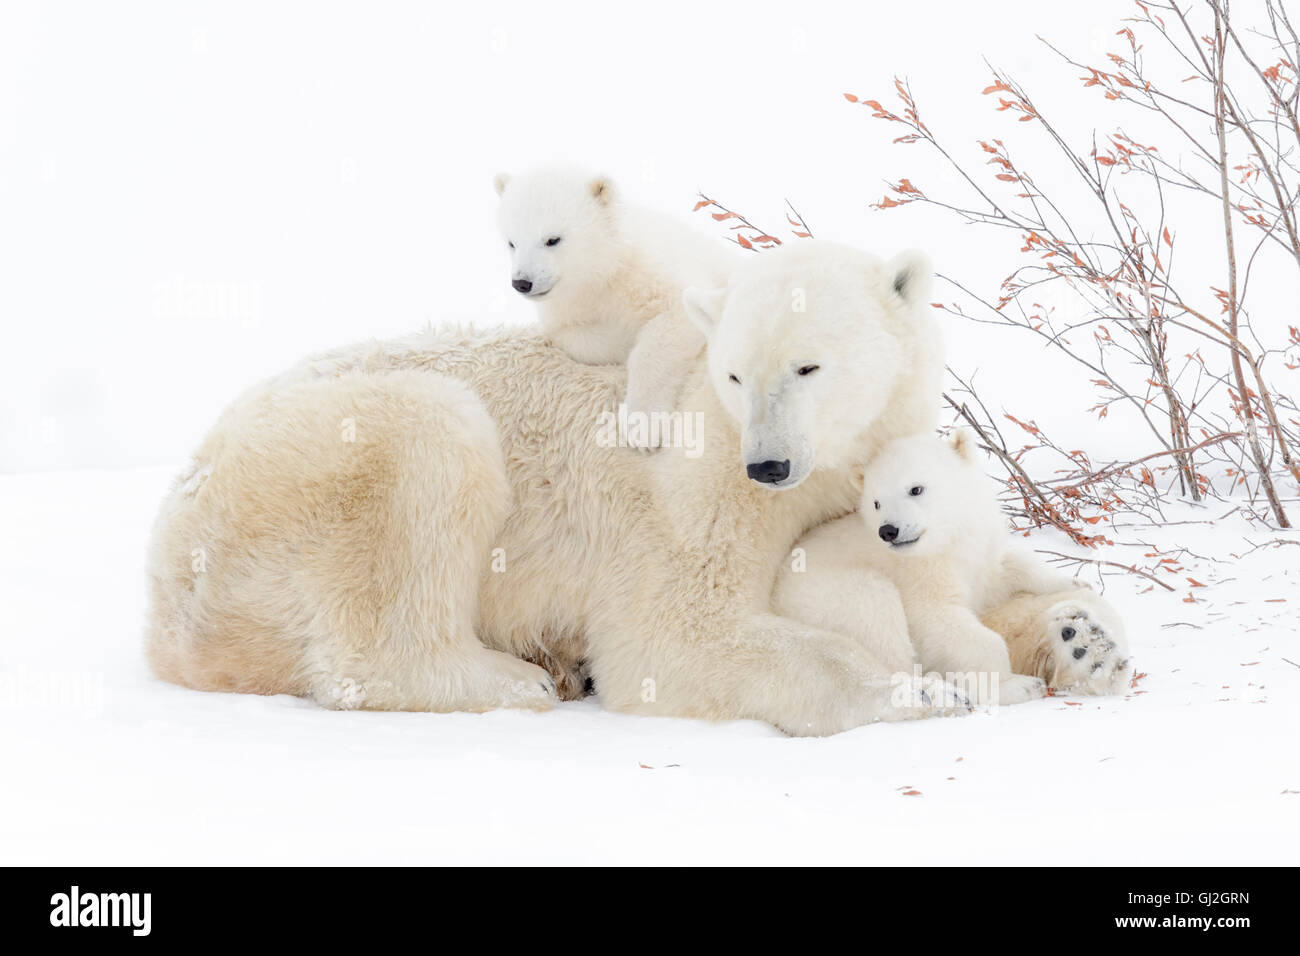 El oso polar (Ursus maritimus) madre acostado con dos cachorros jugando, Parque Nacional Wapusk, Manitoba, Canadá Foto de stock